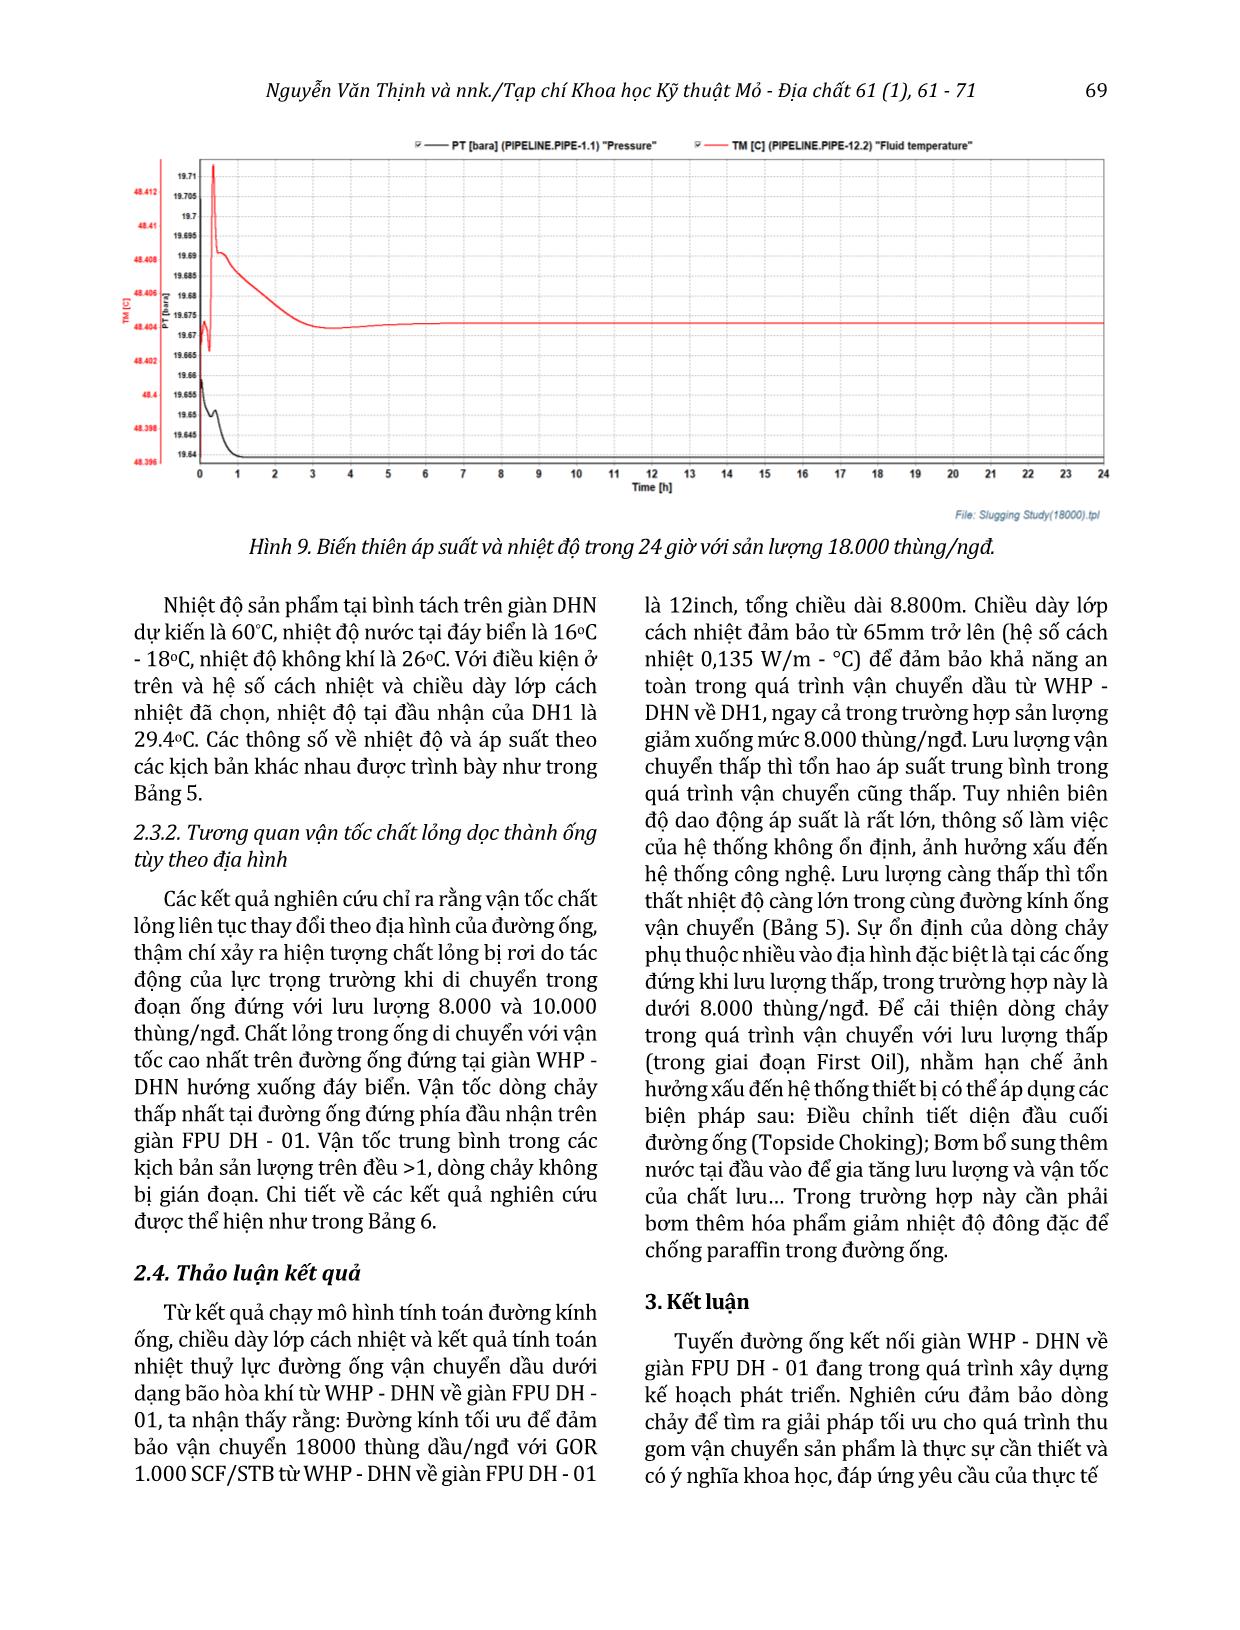 Nghiên cứu giải pháp thu gom vận chuyển dầu từ giàn Đại Hùng Nam (WHP - DHN) về giàn FPU DH - 01 mỏ Đại Hùng trang 9